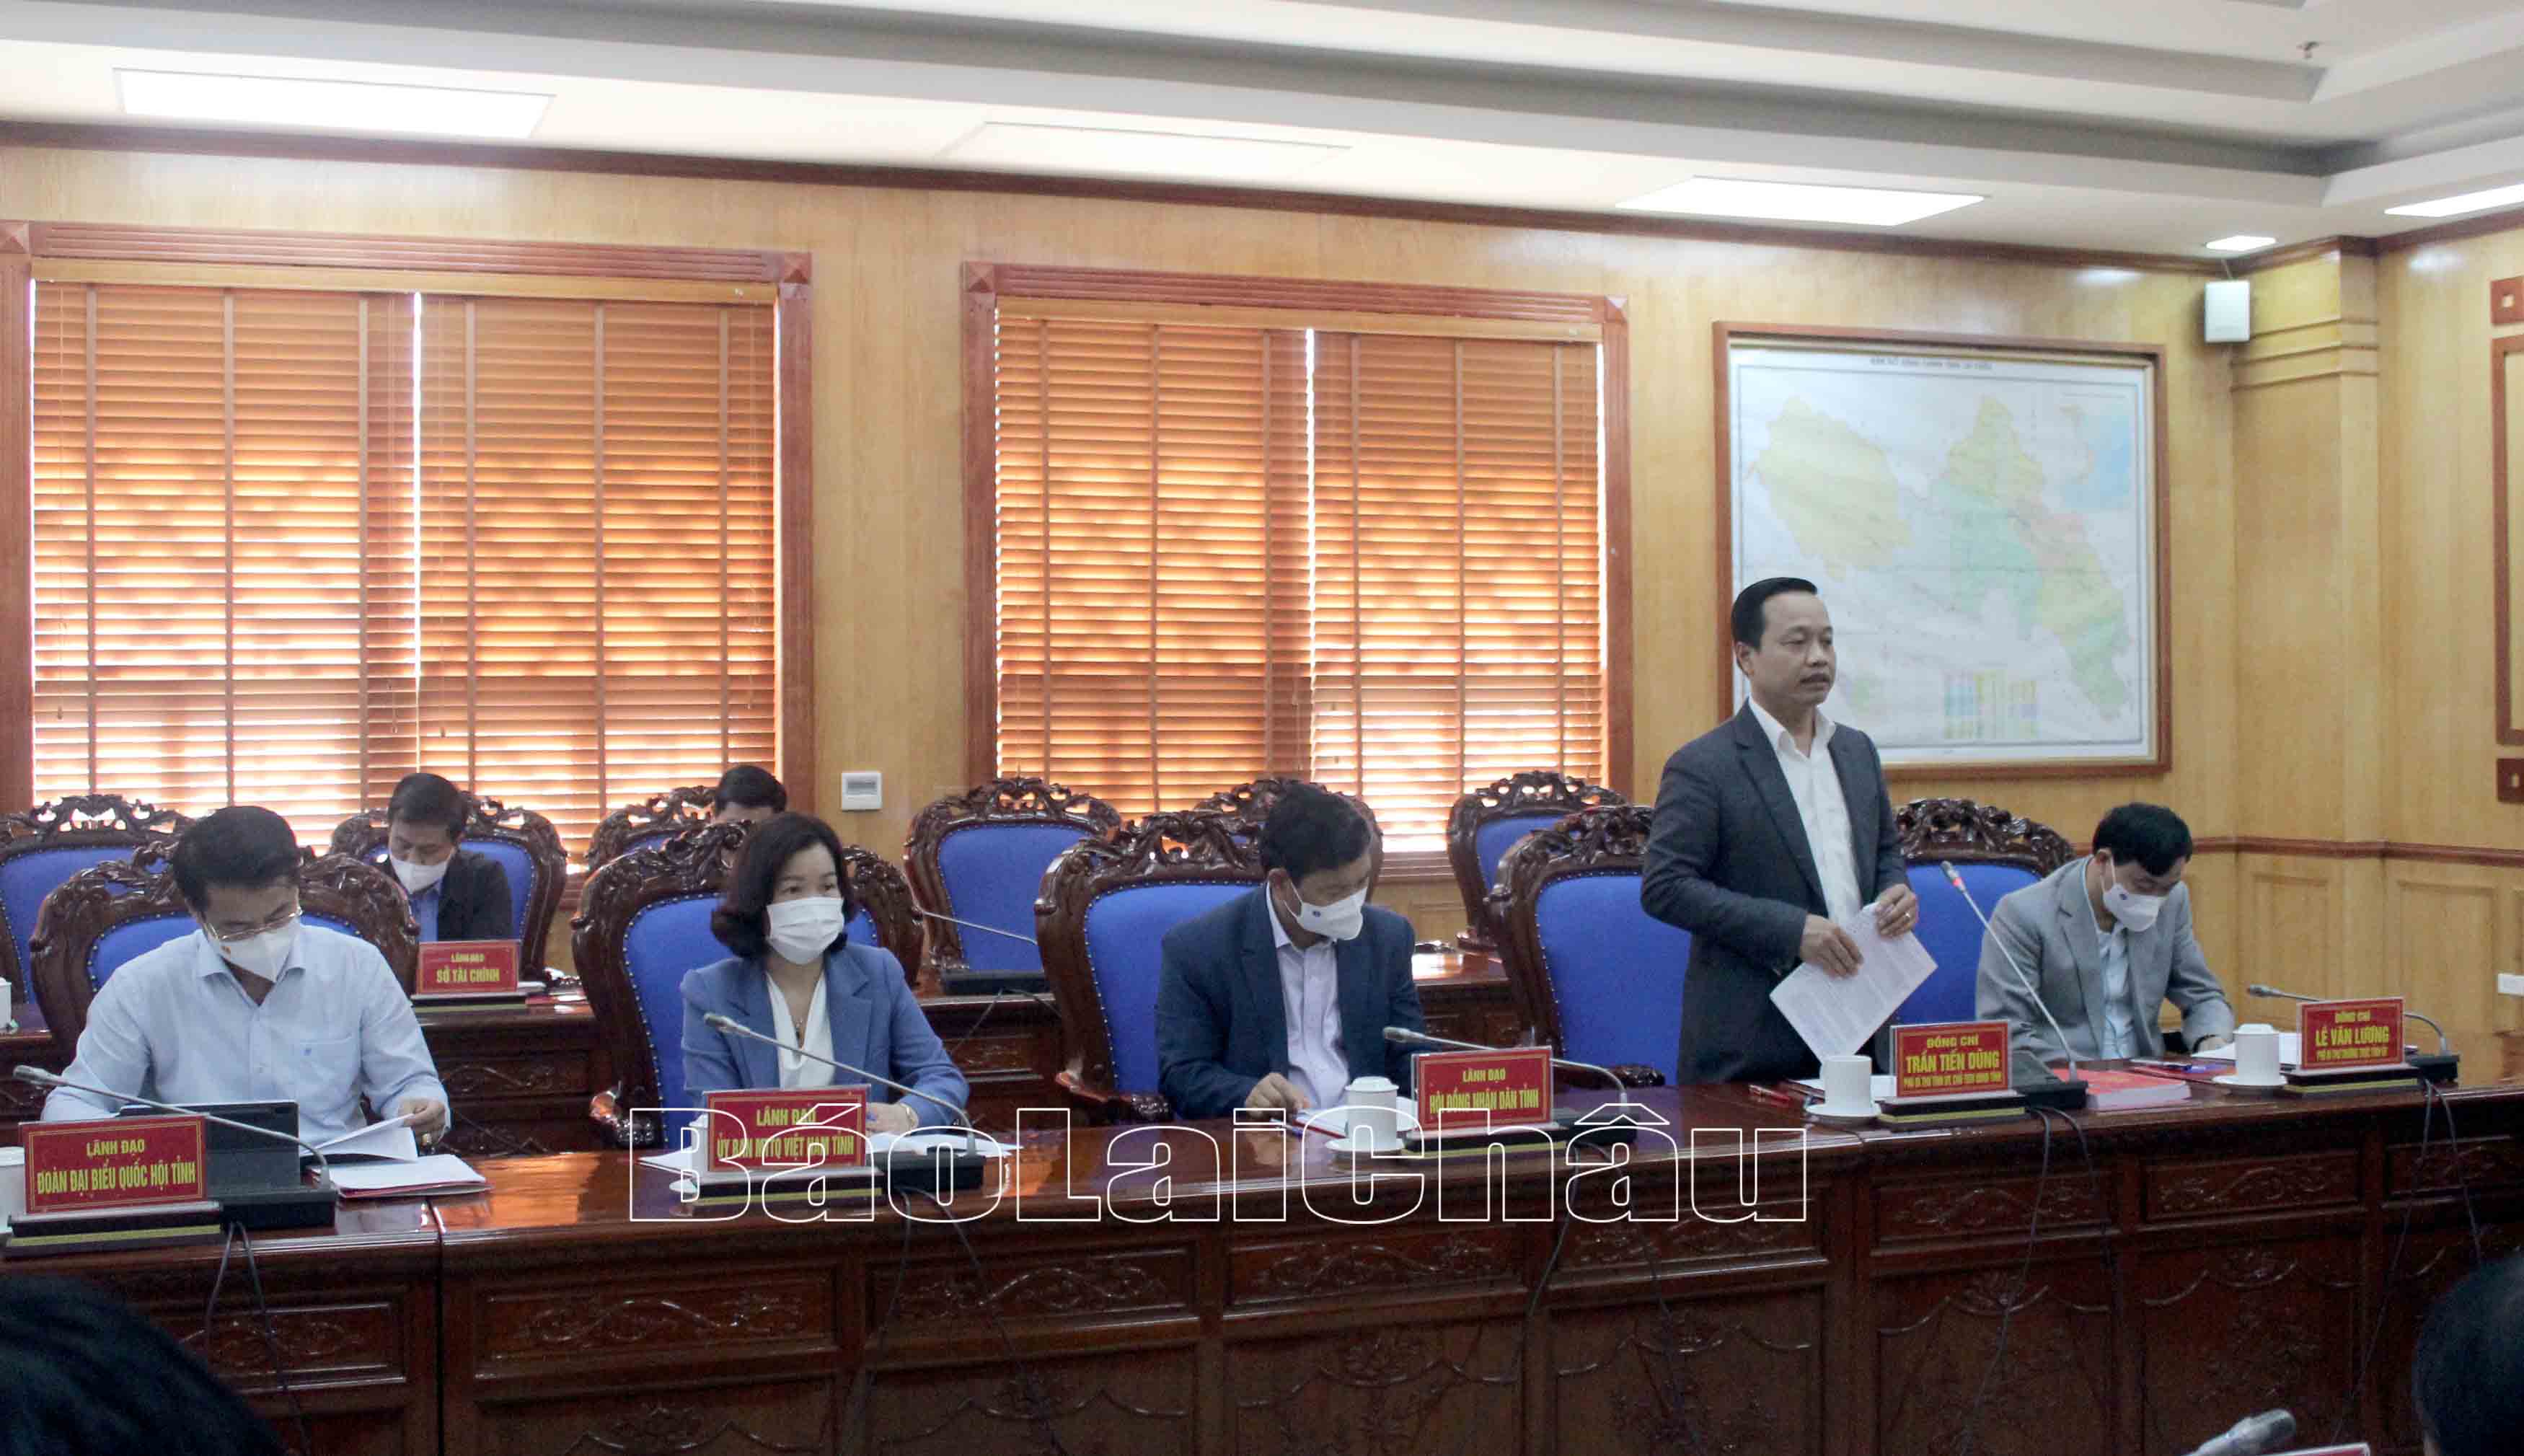 Đồng chí Trần Tiến Dũng - Phó Bí thư Tỉnh ủy, Chủ tịch UBND tỉnh báo cáo với Đoàn công tác về tình hình phát triển kinh tế - xã hội của tỉnh.